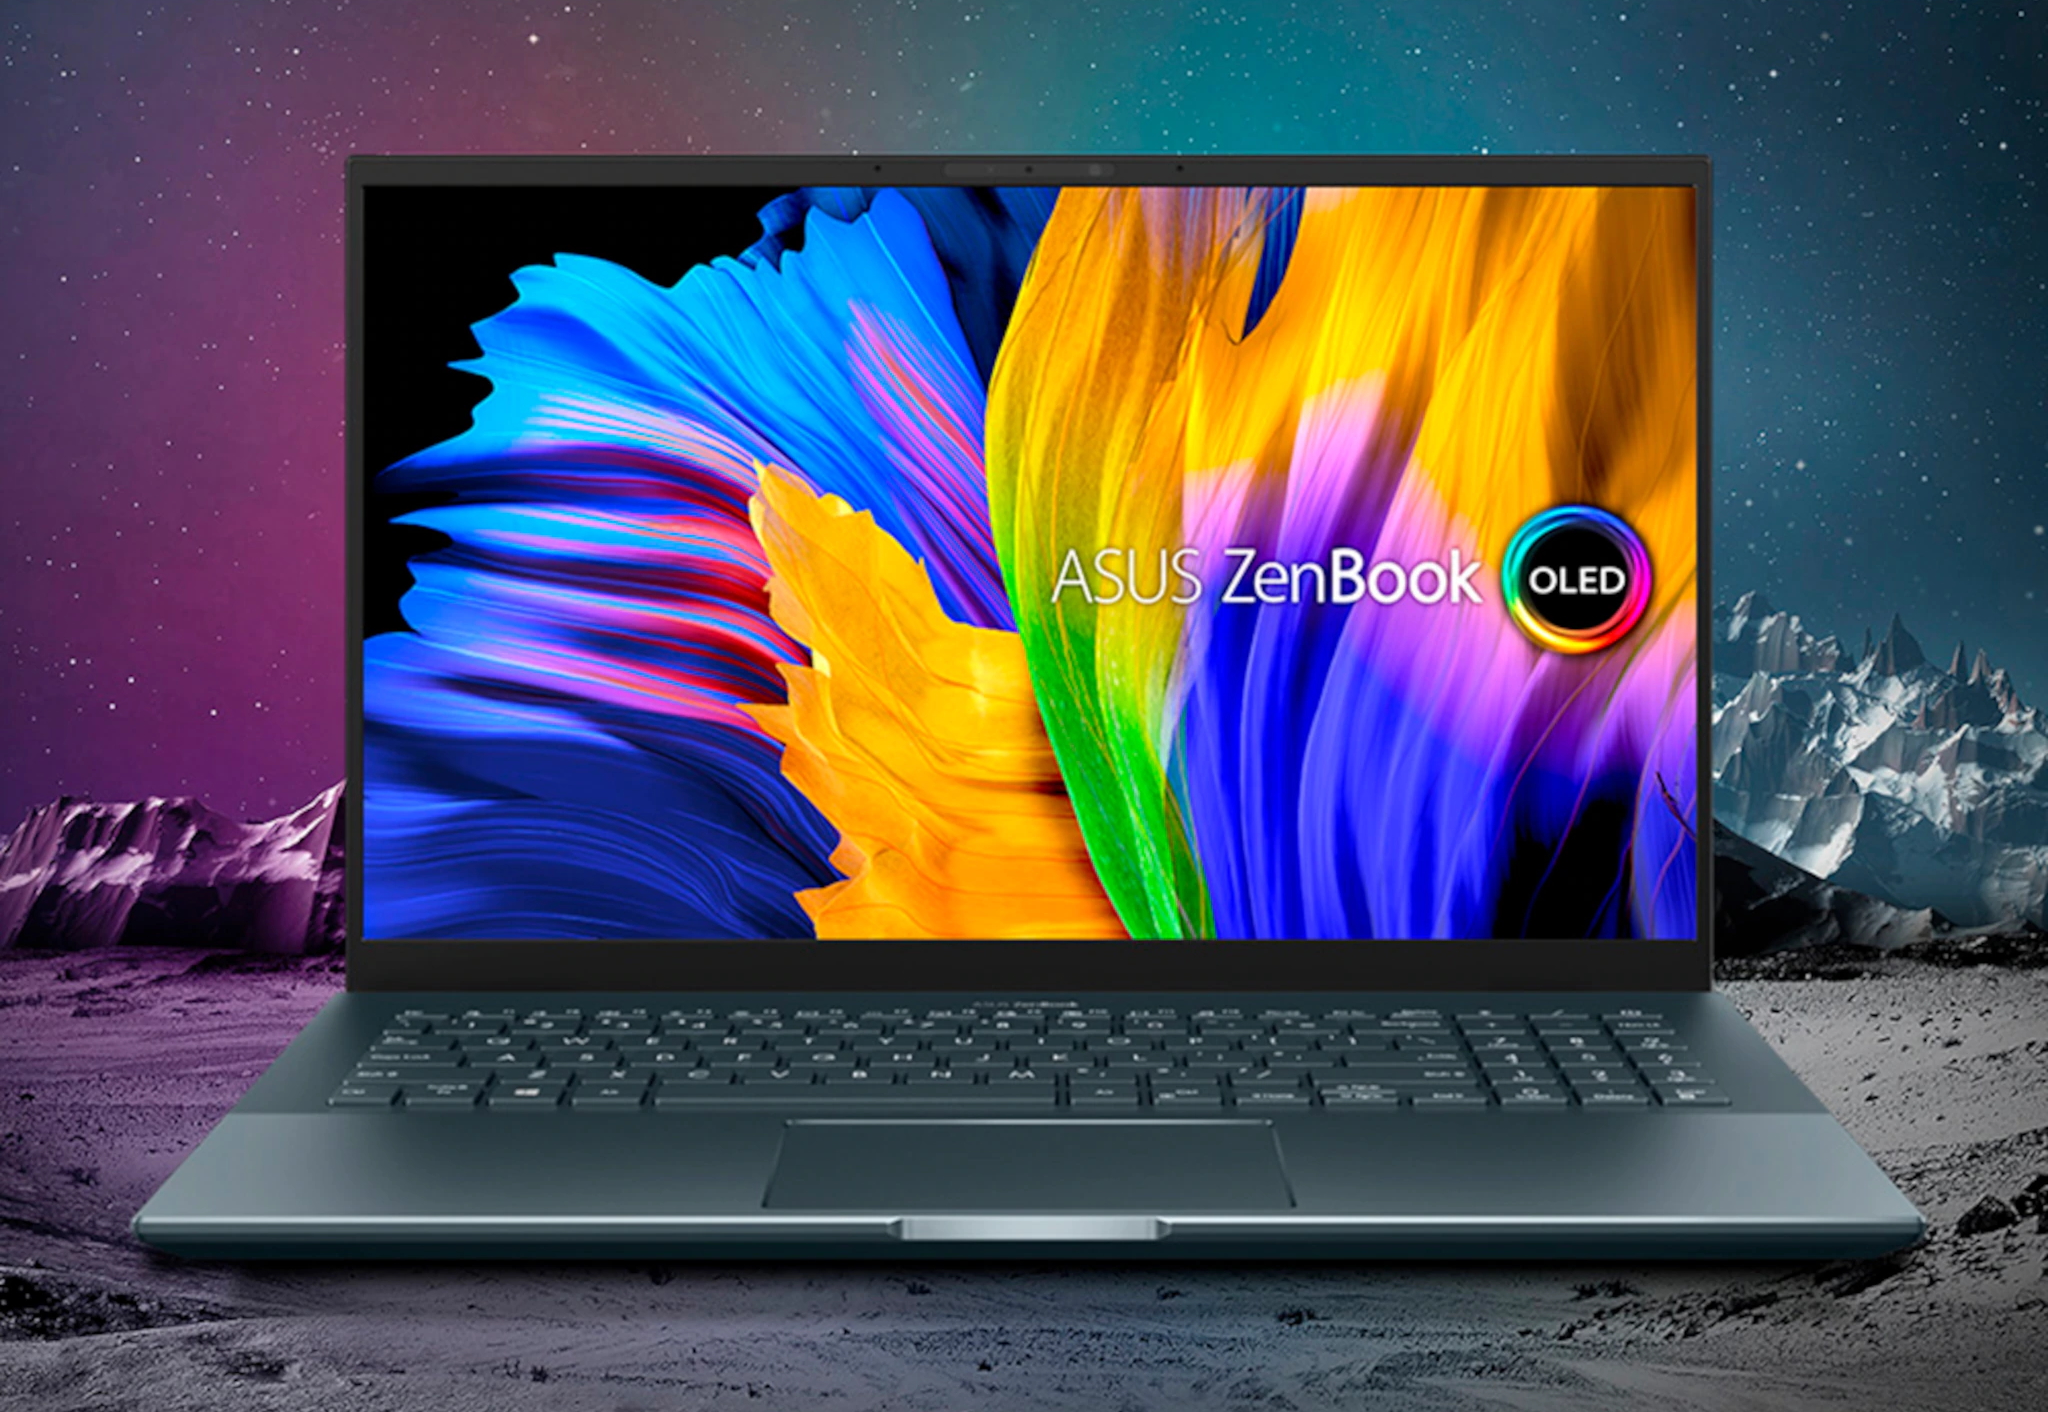 ASUS ZenBook Pro 15 apparaît chez les détaillants avec un processeur AMD  Ryzen 9 5900HX, un GPU NVIDIA GeForce RTX 3050 Ti et un écran OLED 4K -  NotebookCheck.net News